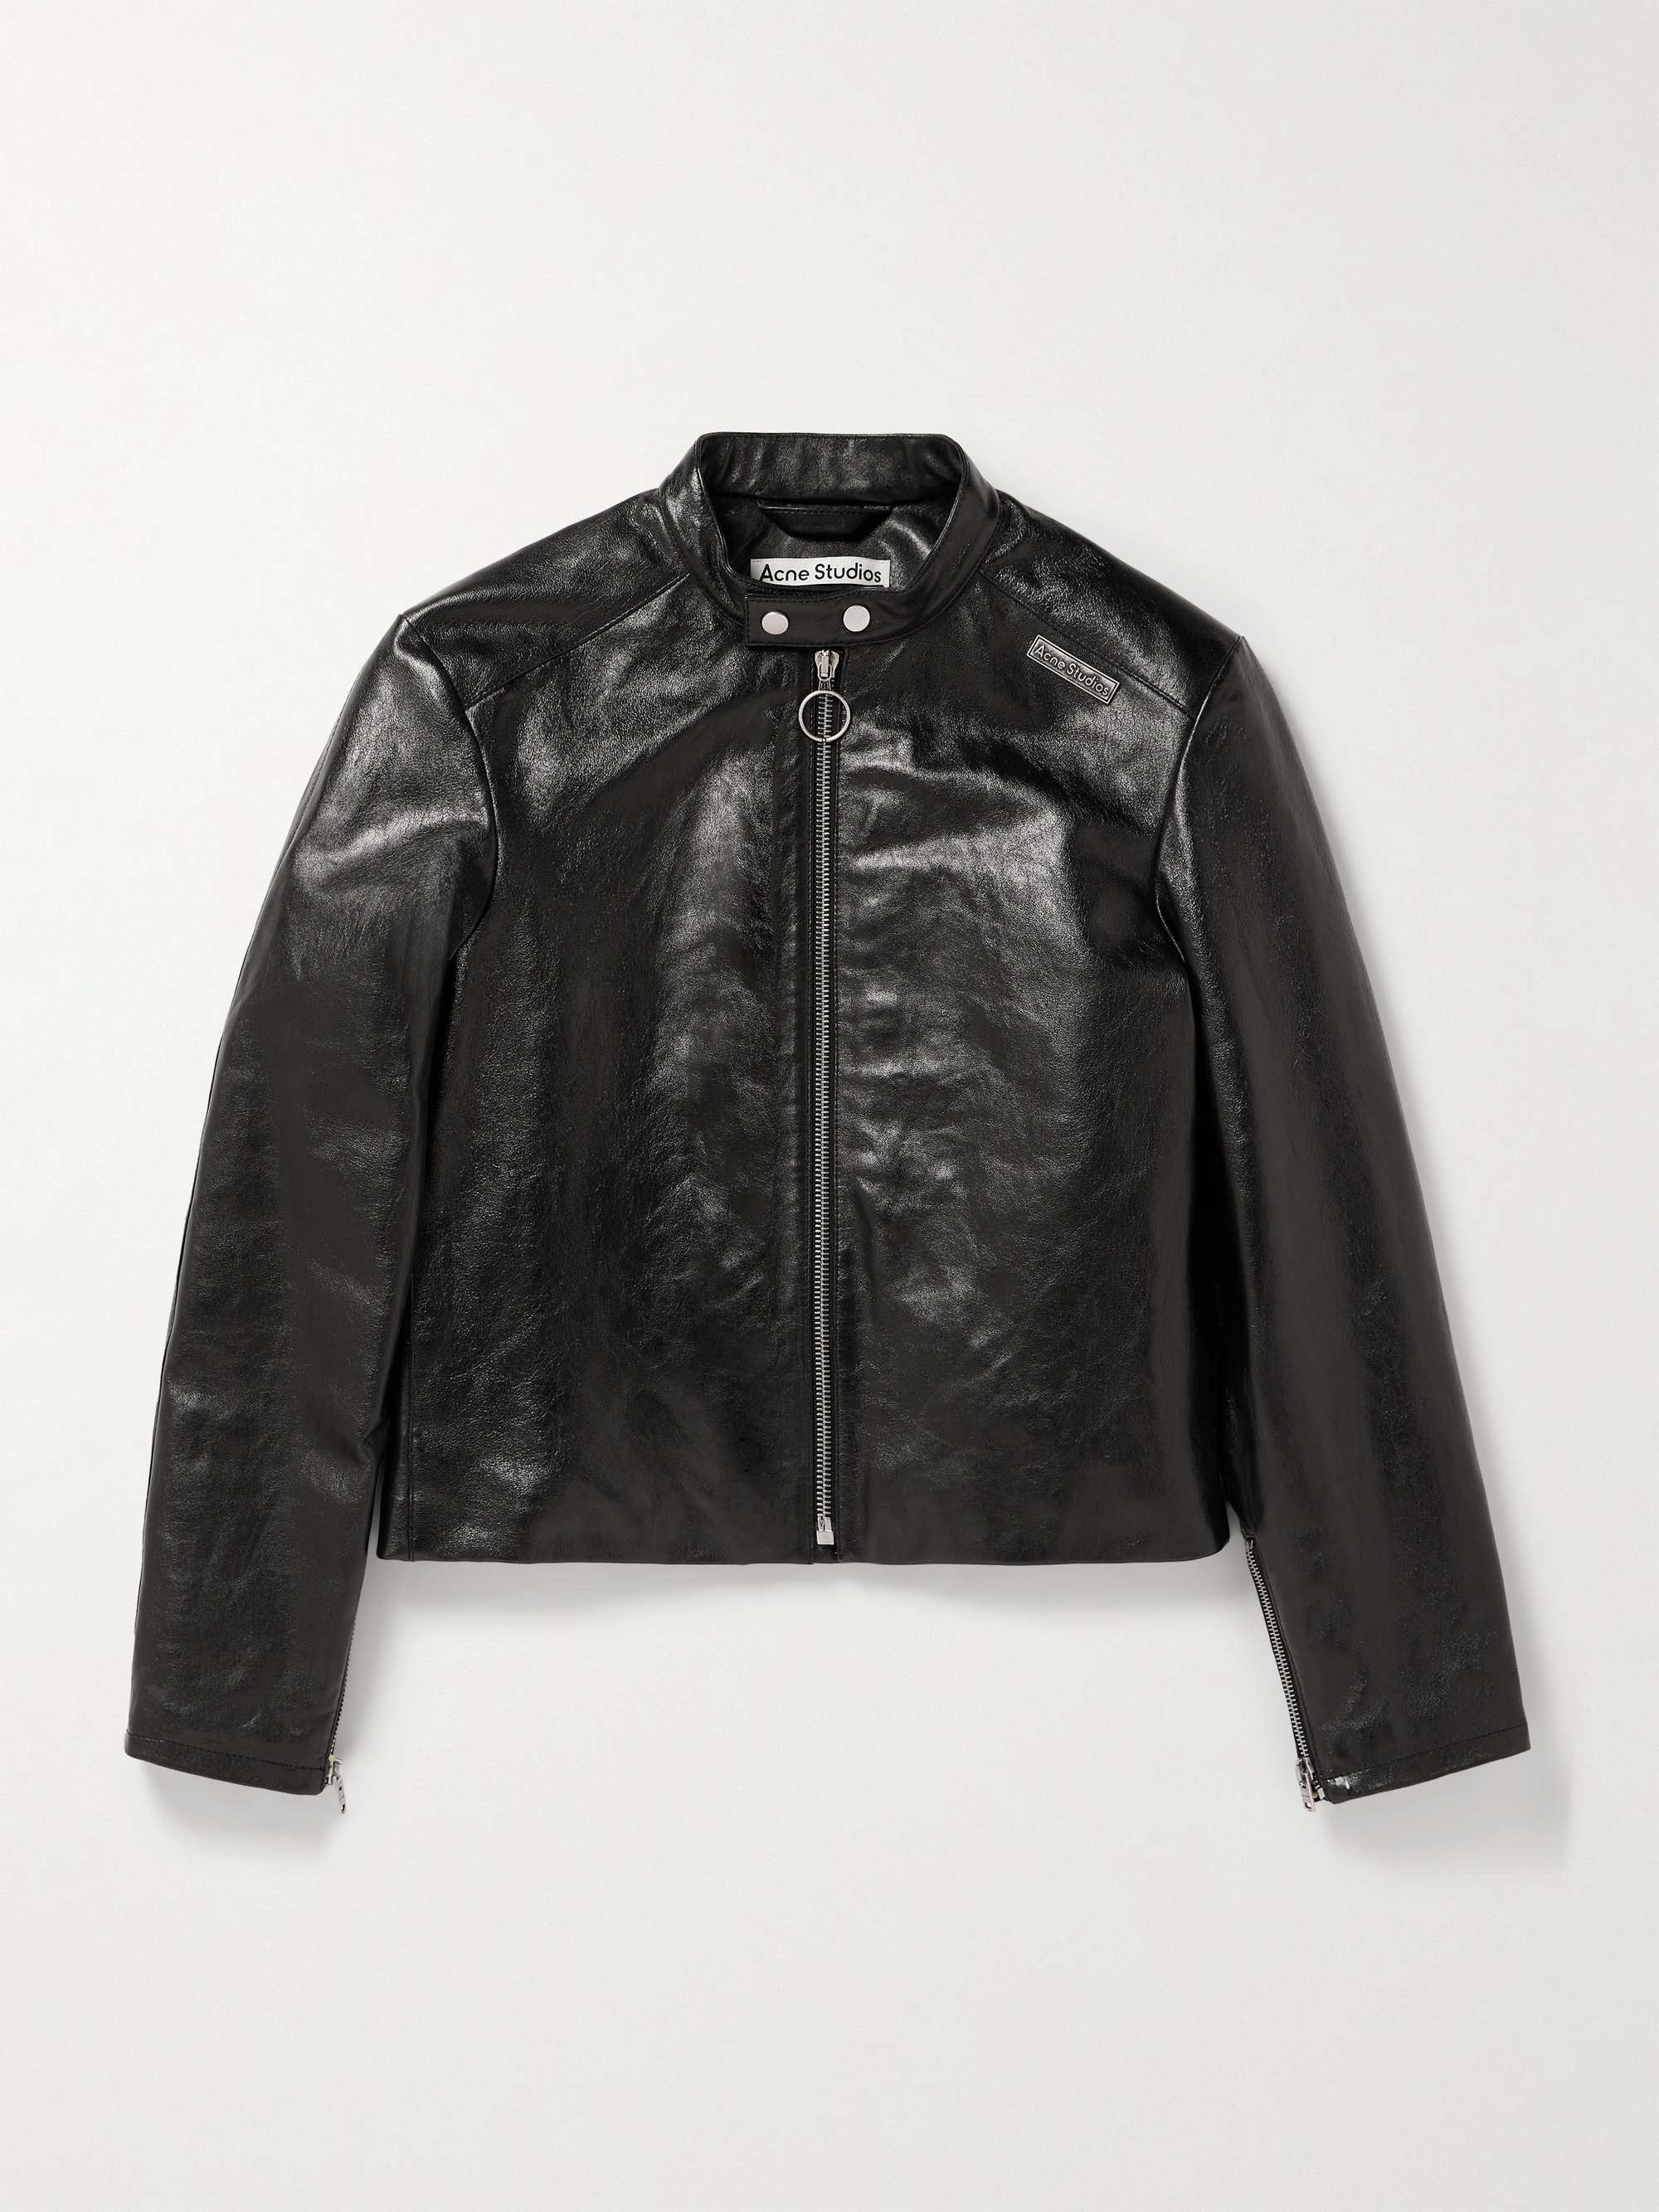 ACNE STUDIOS Leather Biker Jacket for Men | MR PORTER